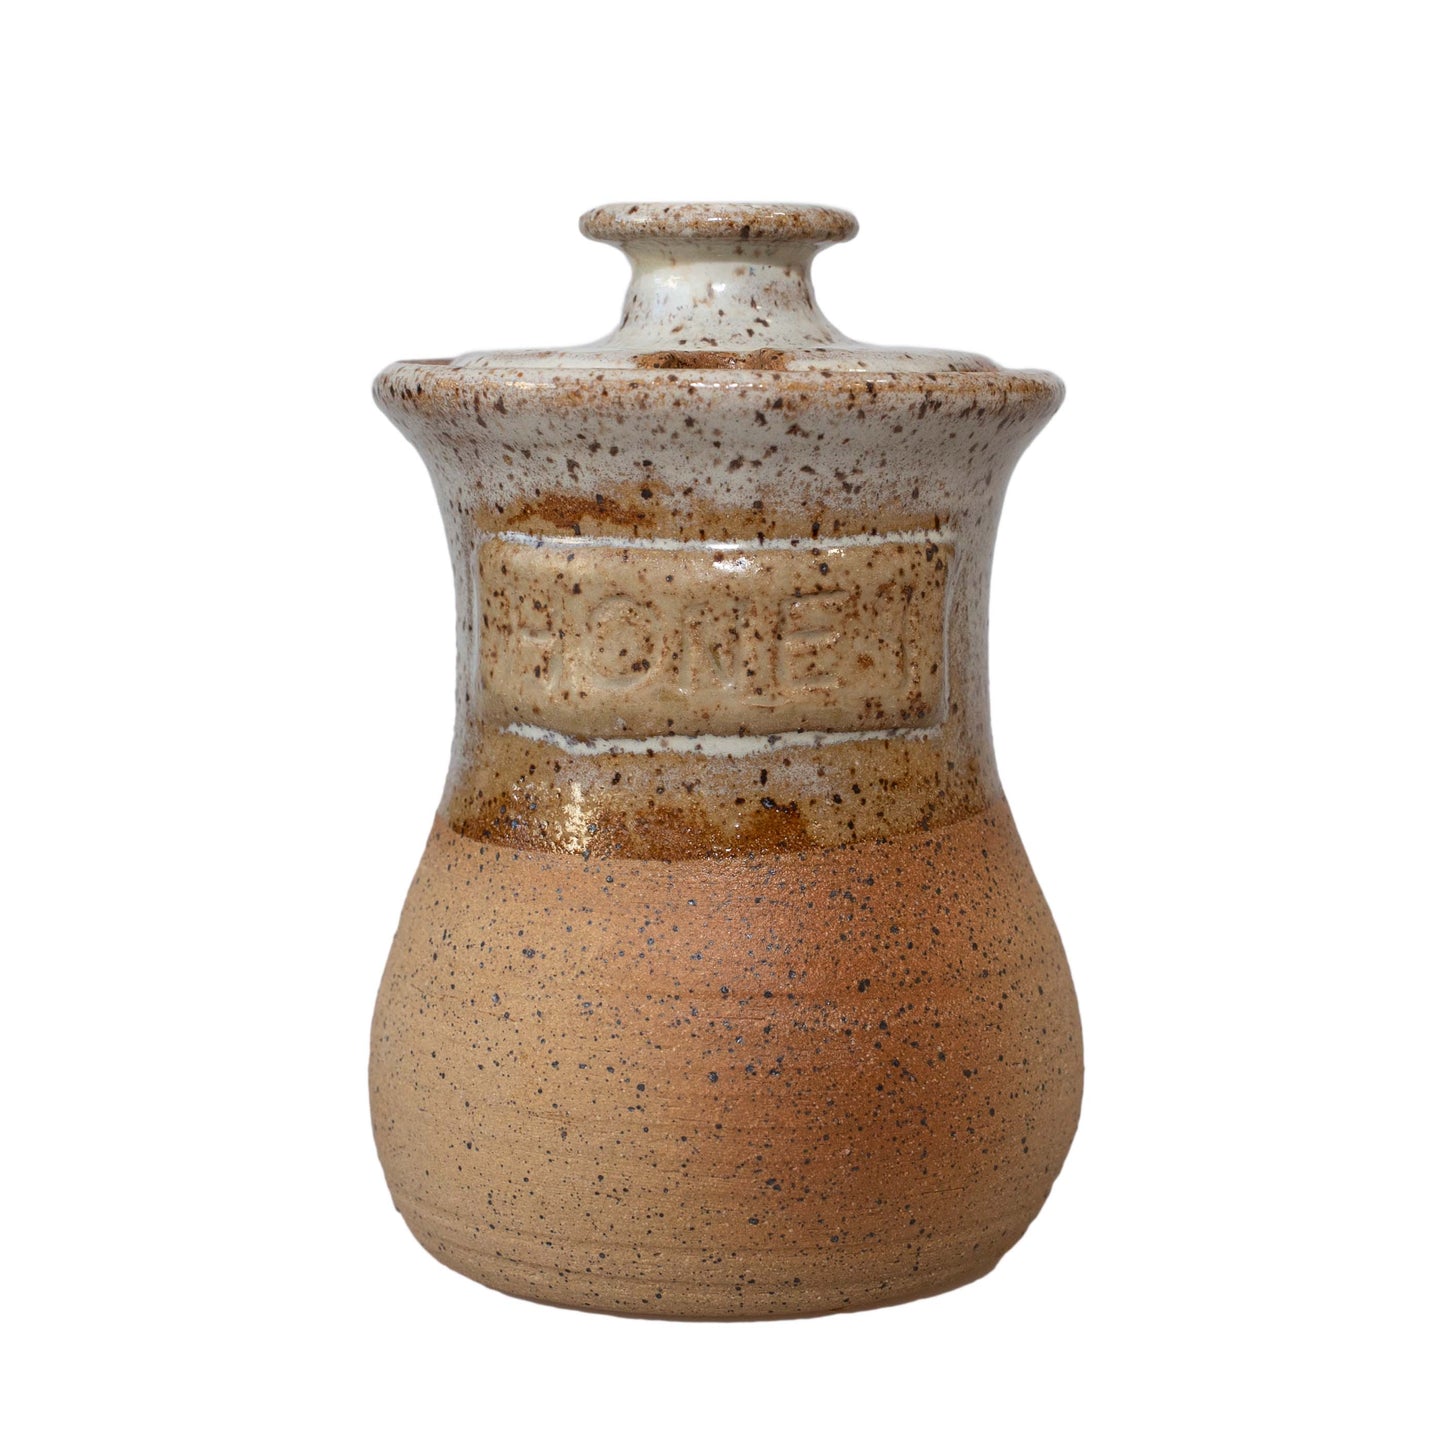 Ceramic Honey Jar